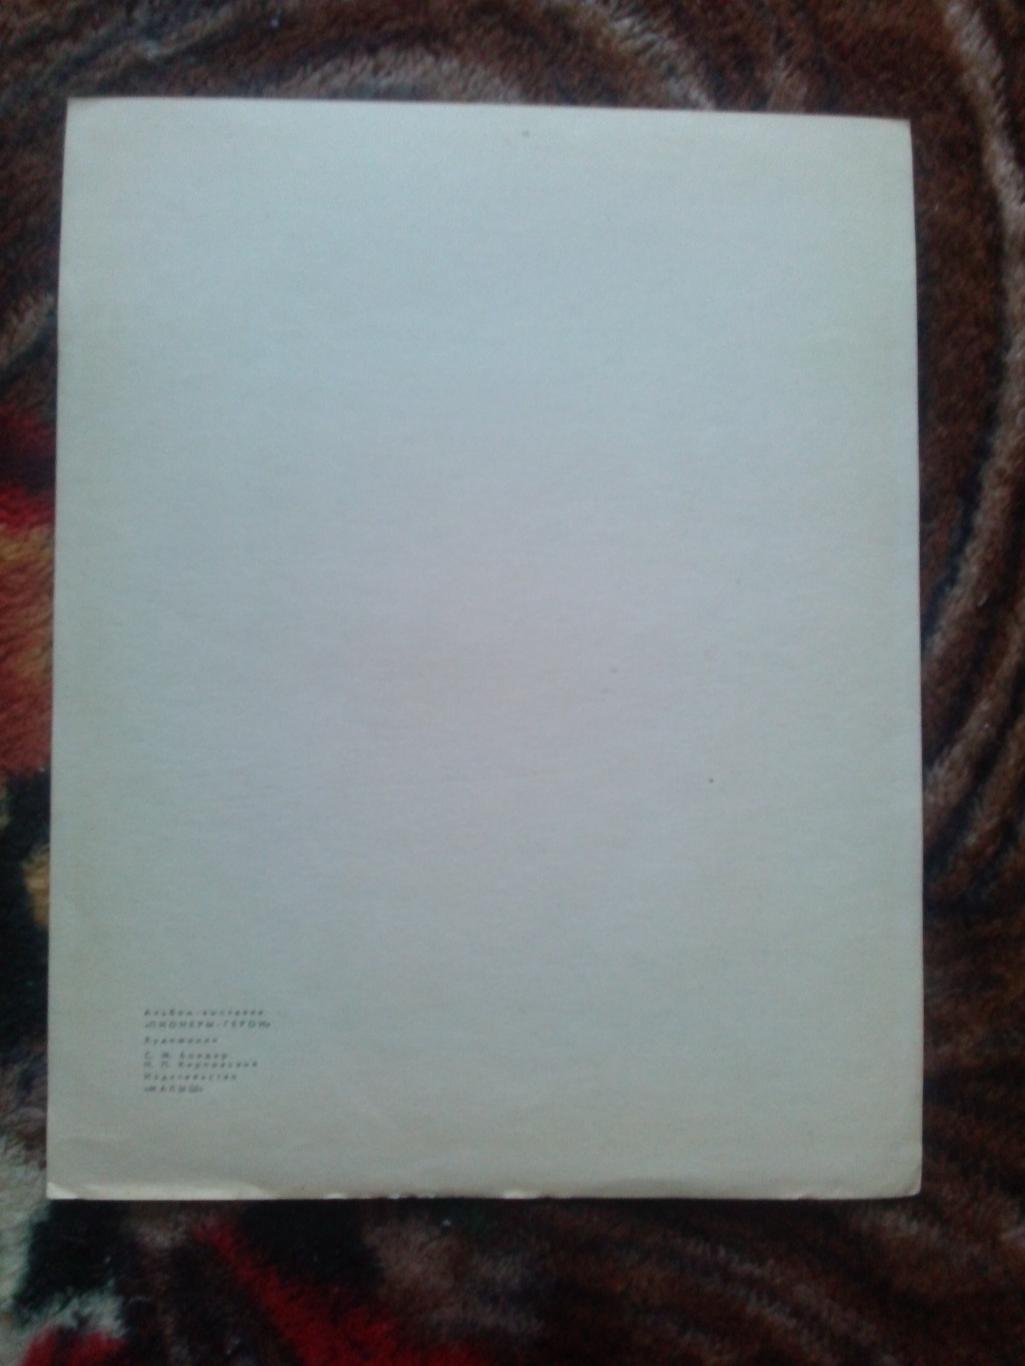 Пионеры-герои (Плакат + брошюра) 1967 г. Толя Шумов (Пионер , агитация) 2